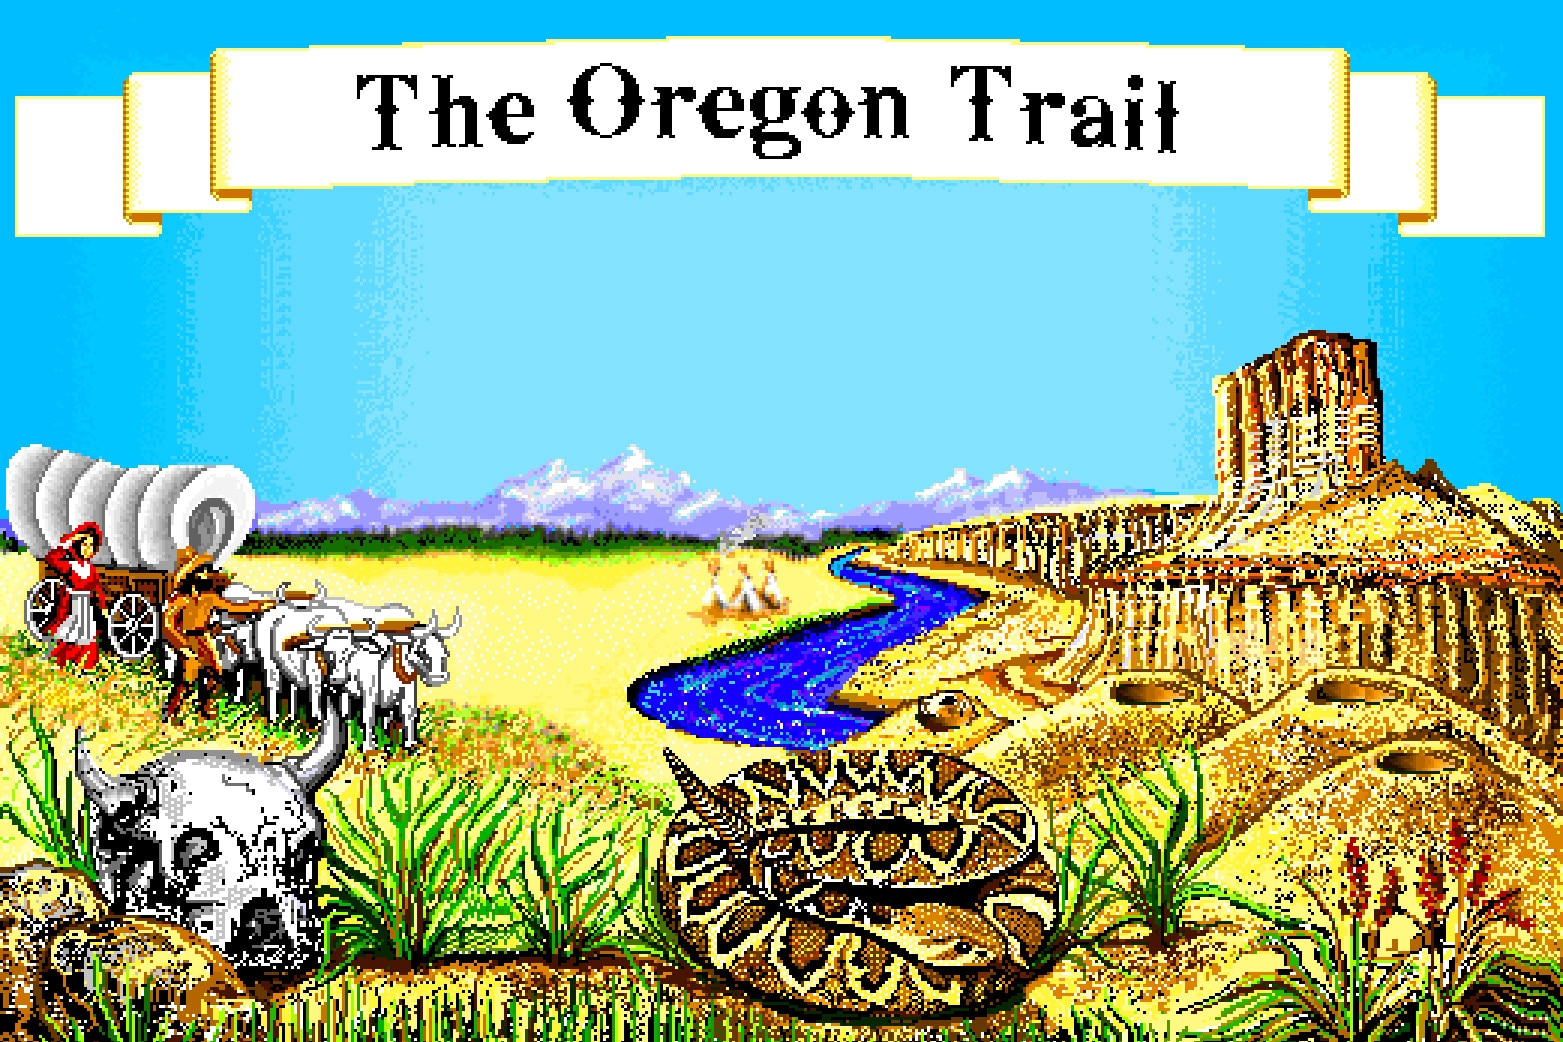 play oregon trail 5th edition online emulator